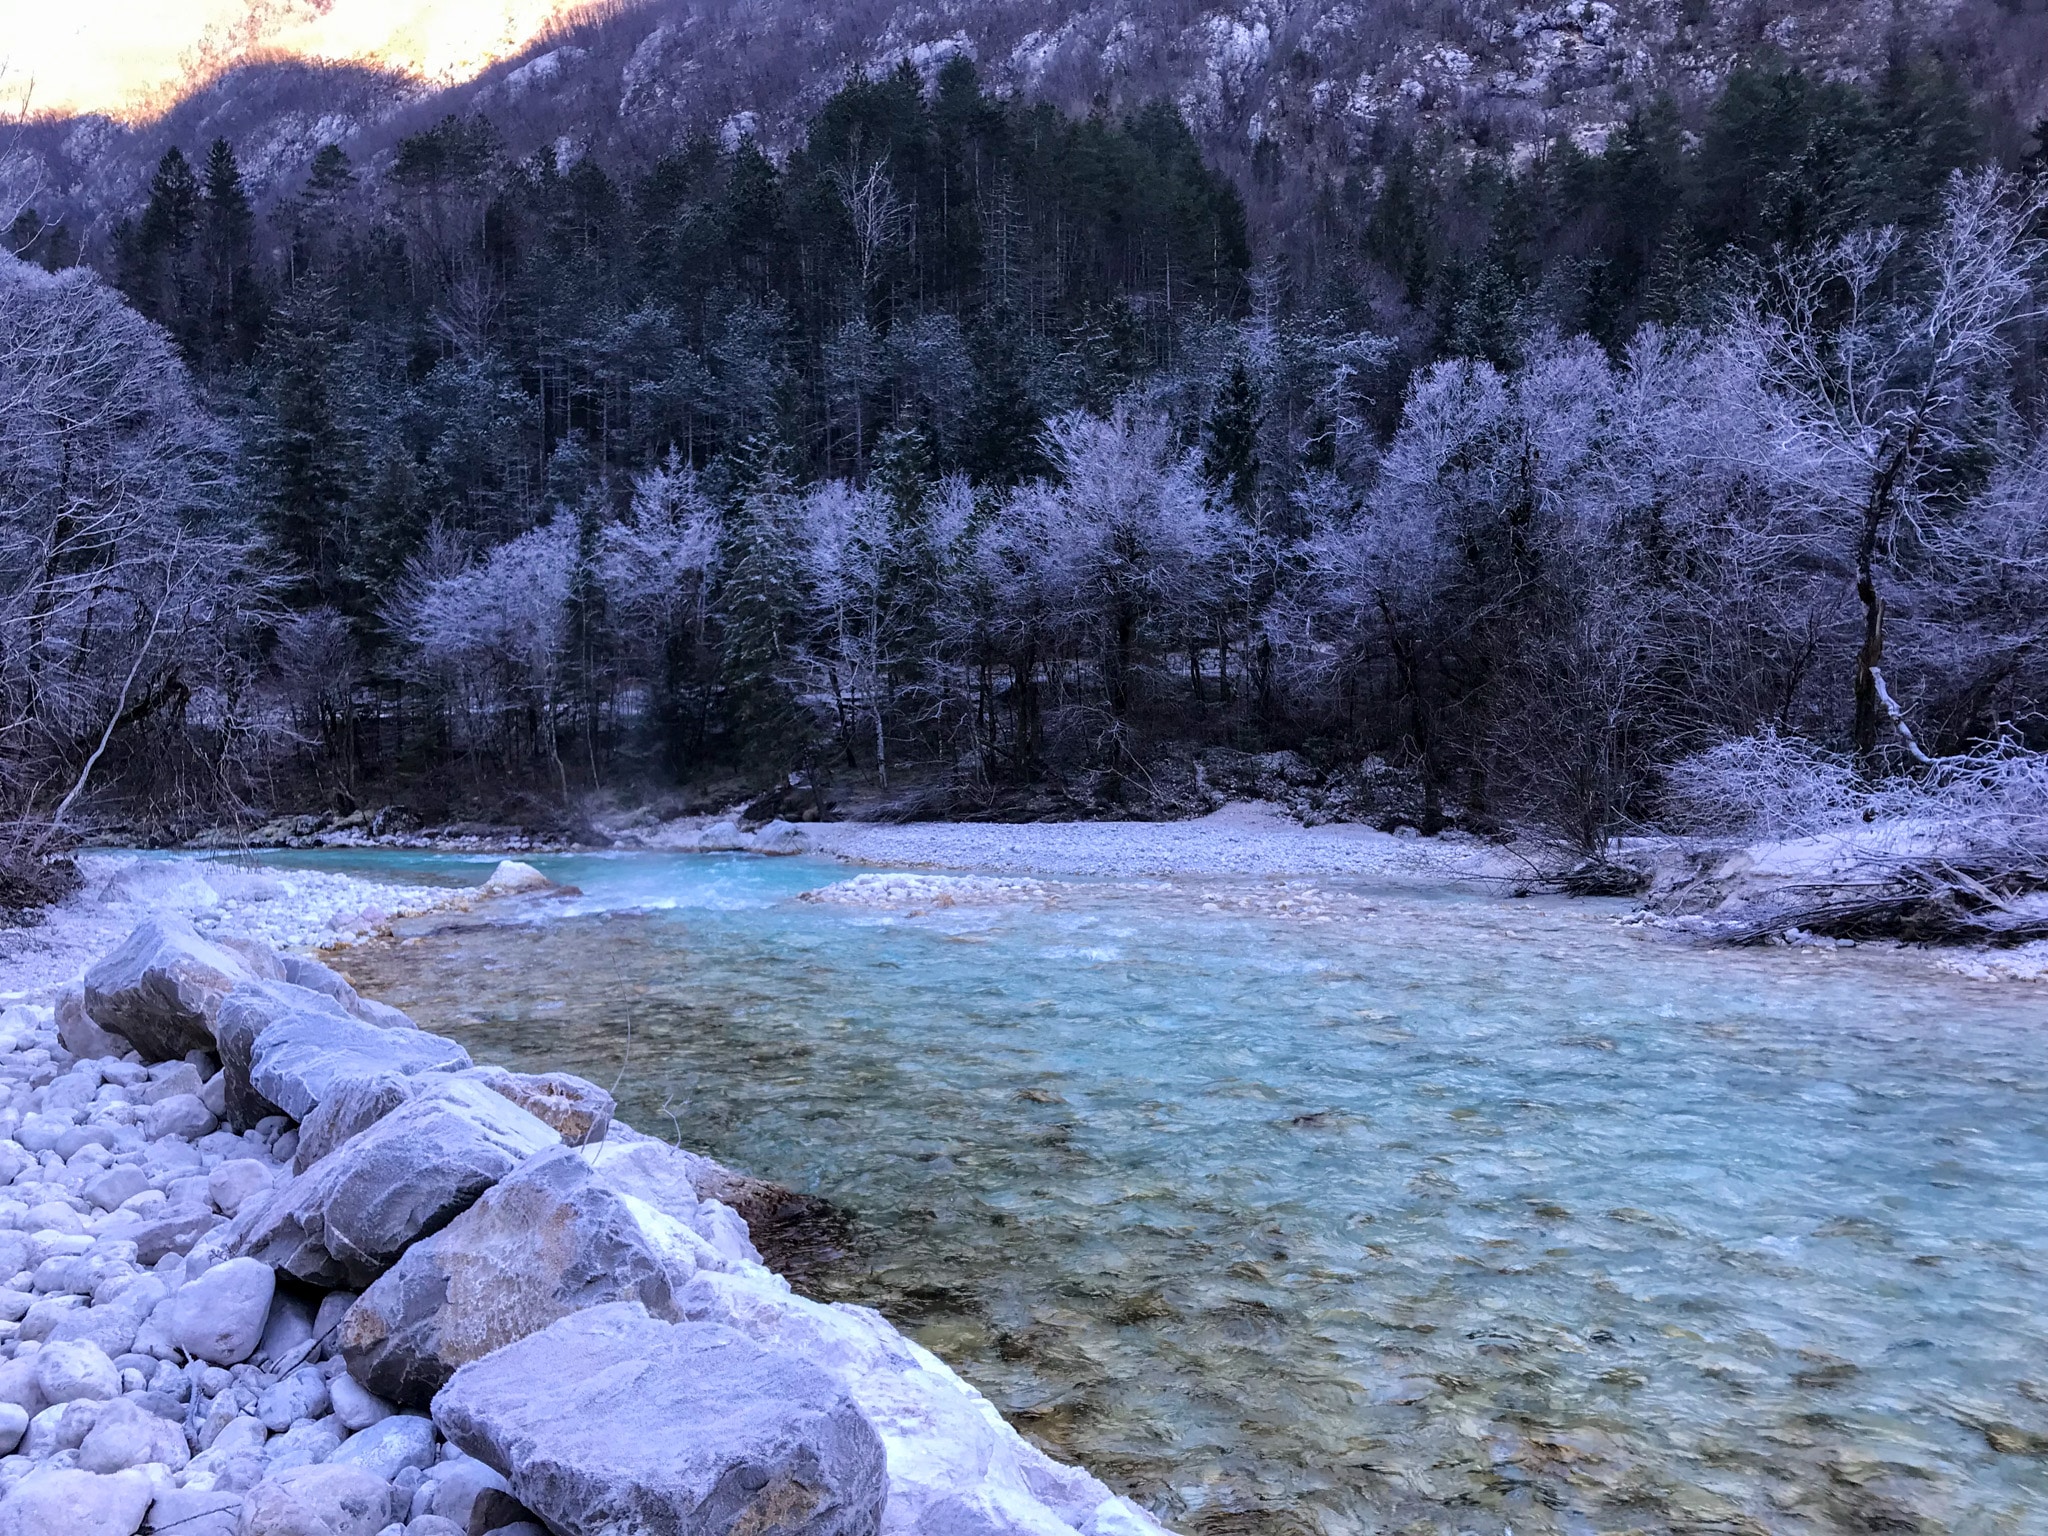 De rivier in de winter